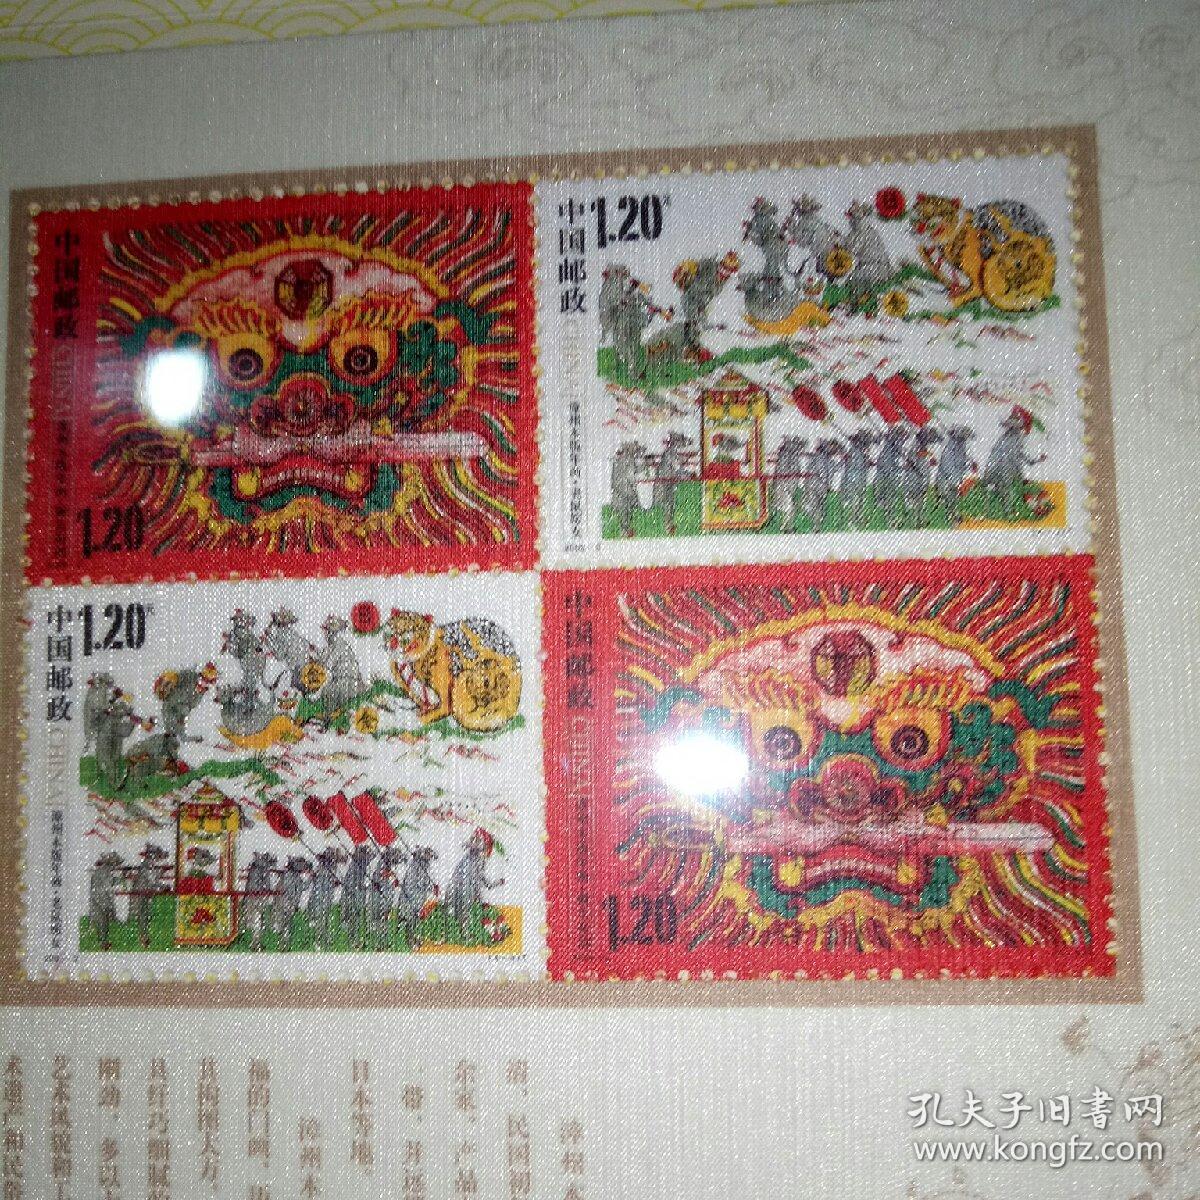 2009年中国邮政贺卡获奖纪念幸运封   木版年画邮票面值9.6元